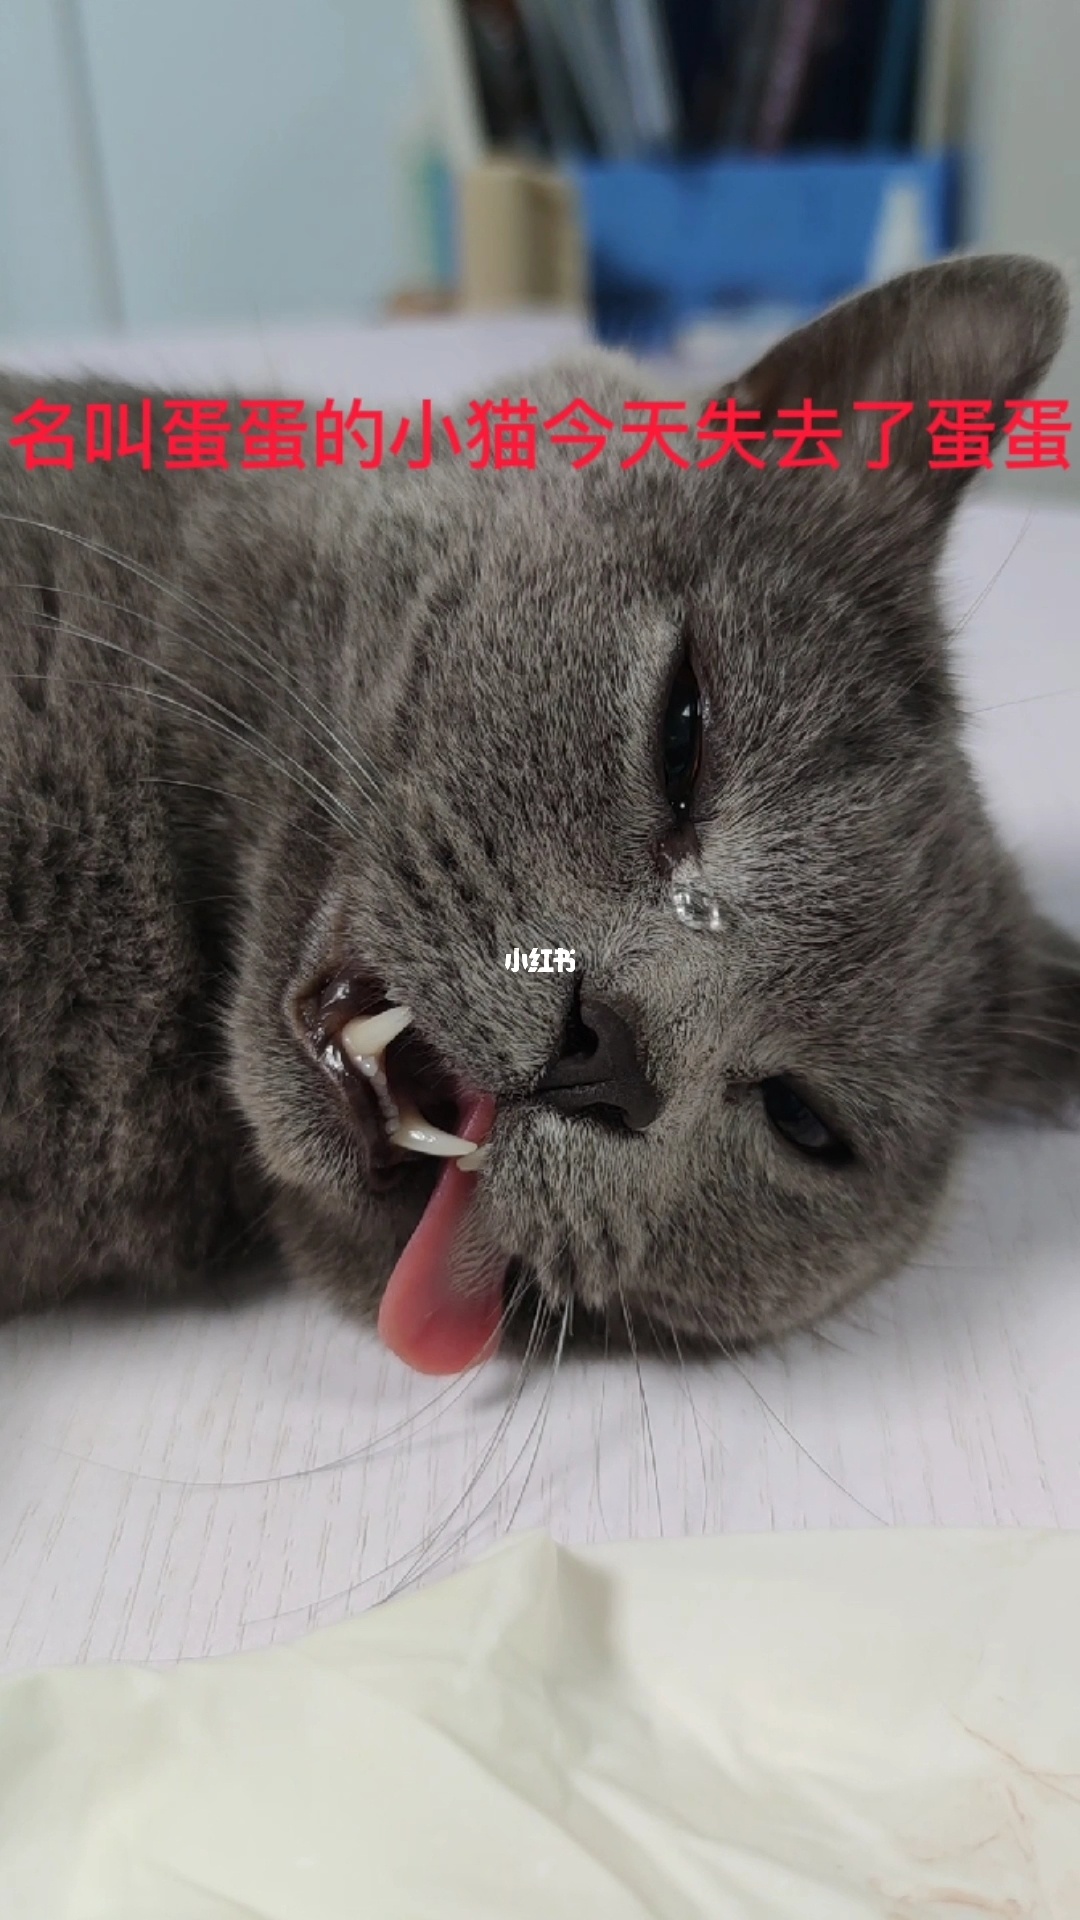 湖南9岁男孩被小猫确诊为“猫爪病”医生建议及时治疗